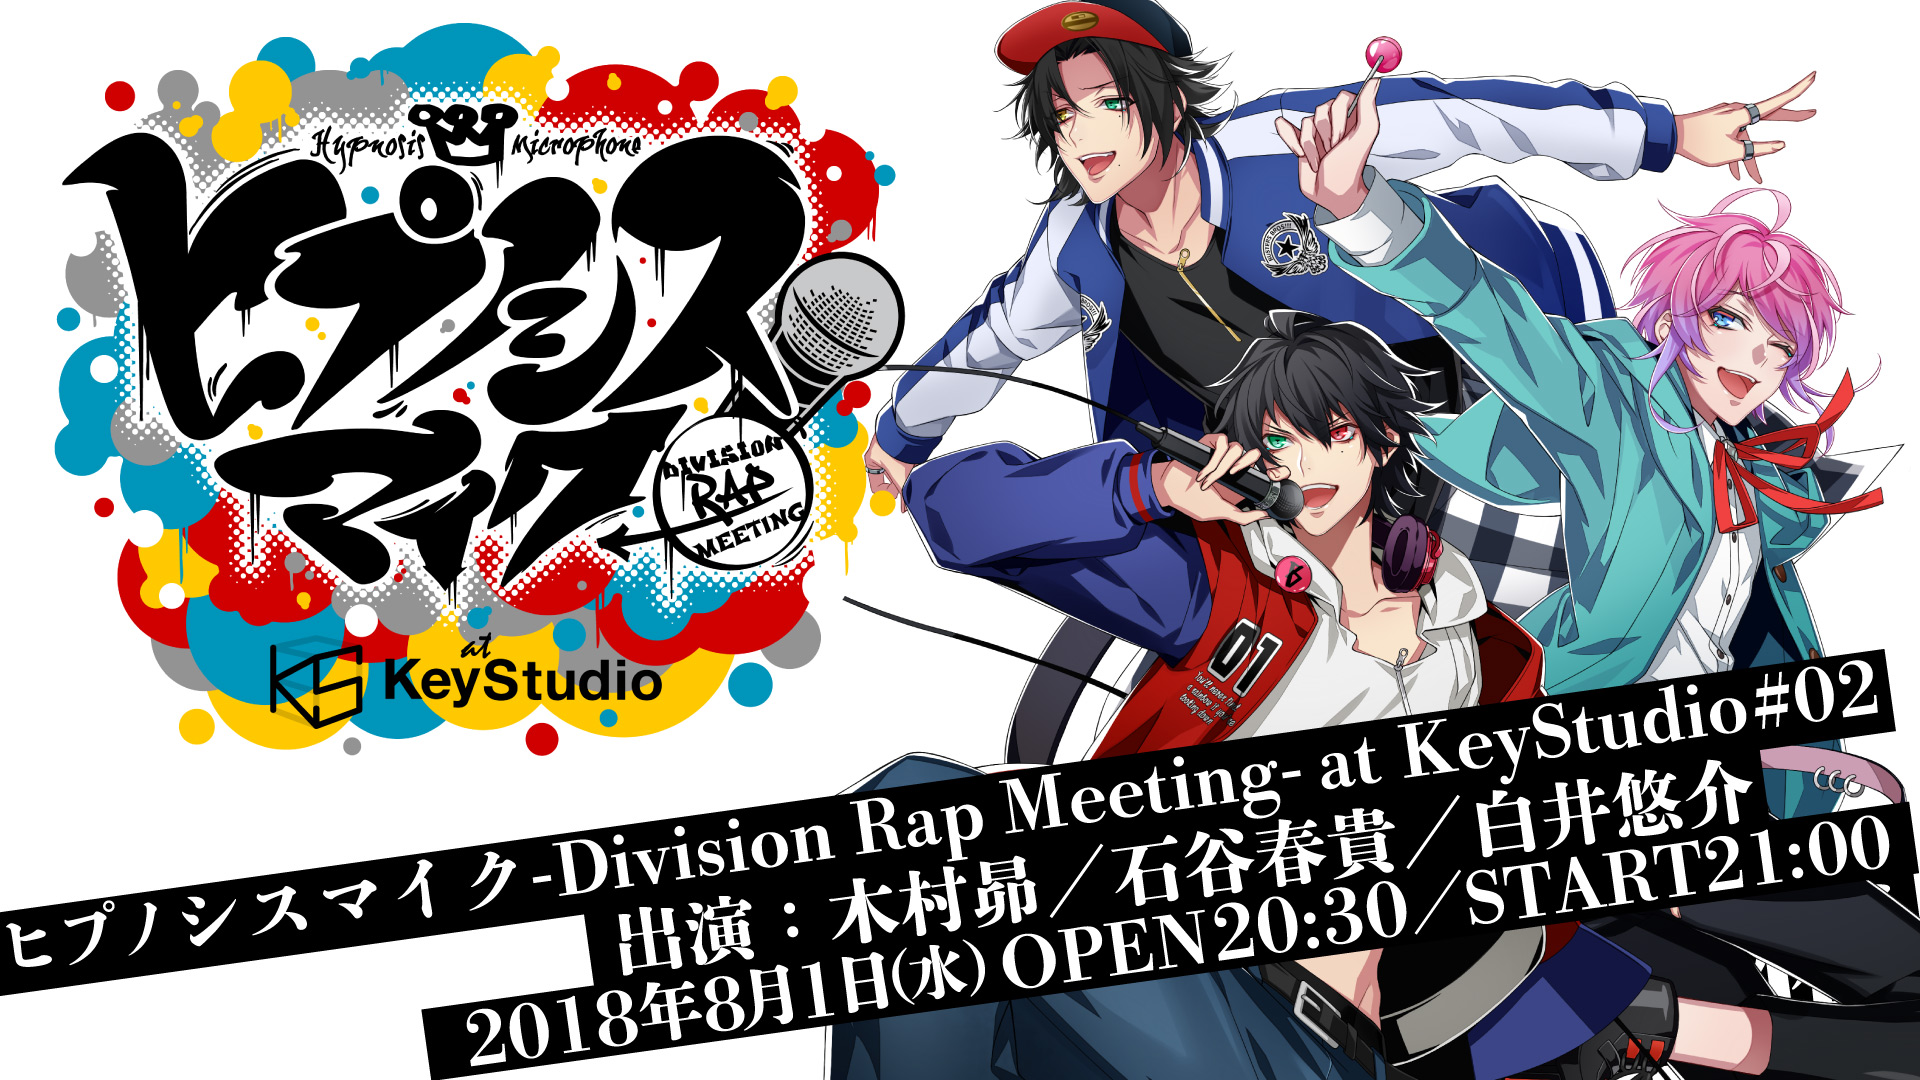 ヒプノシスマイク-Division Rap Meeting-at KeyStudio#2